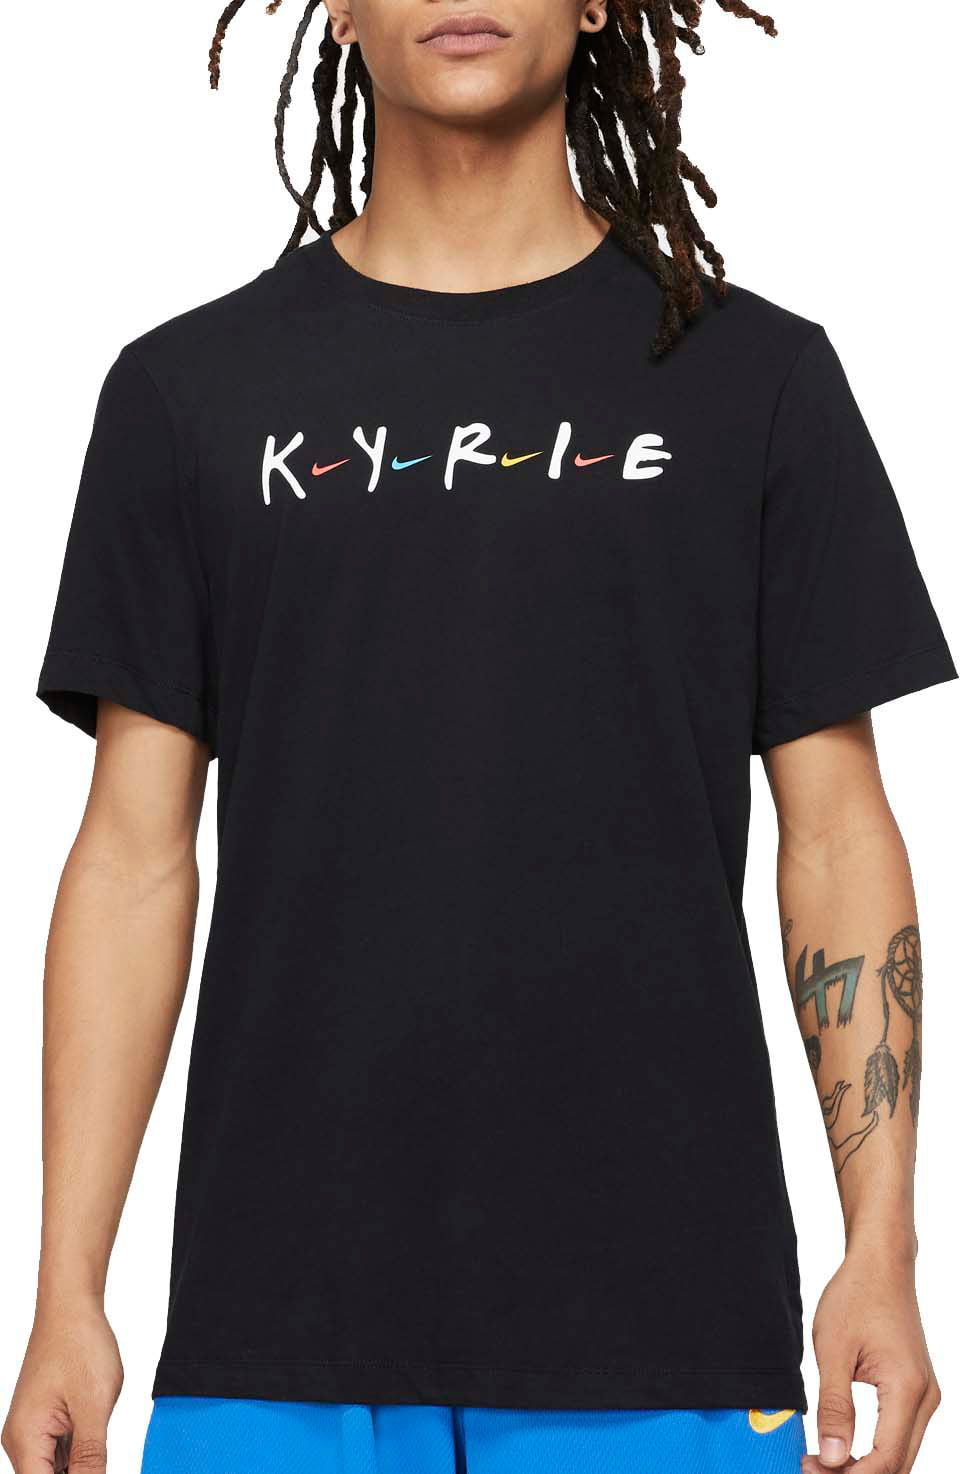 kyrie shirt friends